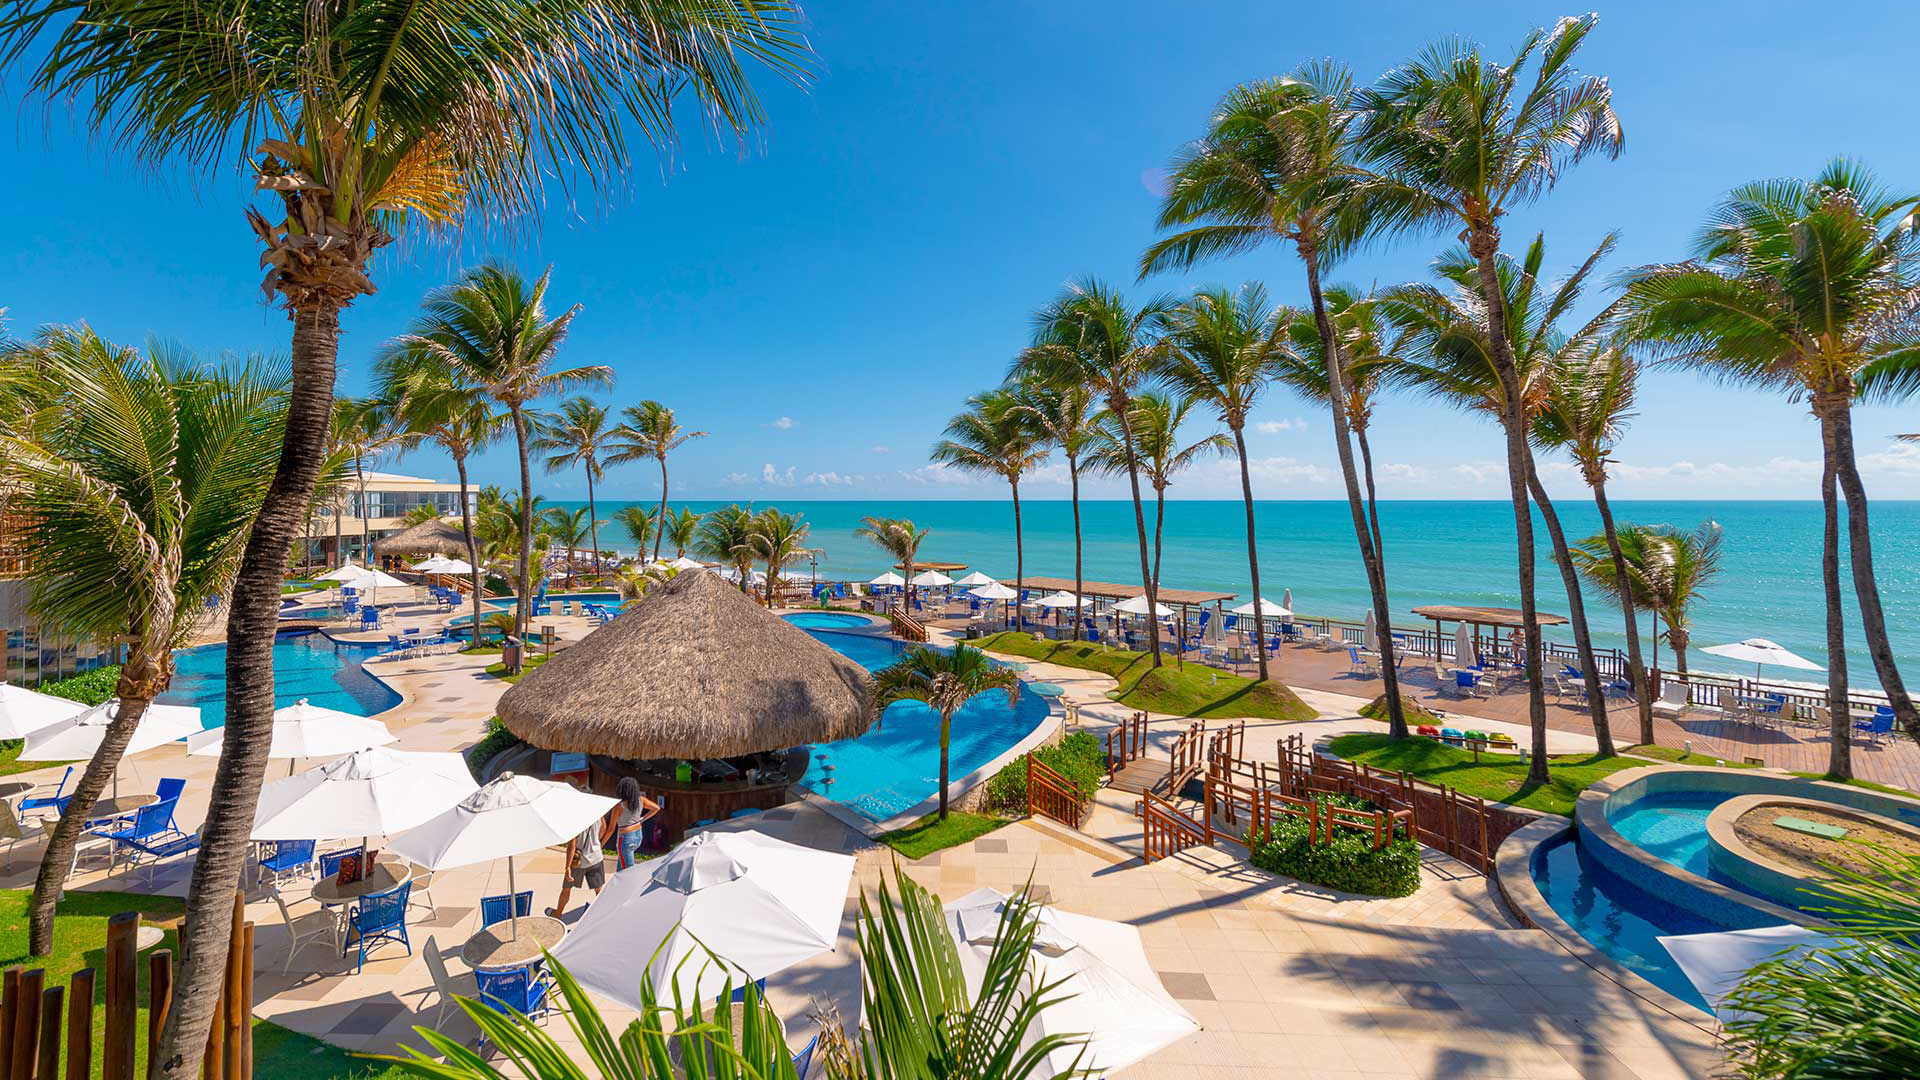 Ocean Palace Beach Resort & Bungalows - Hotéis de Luxo Brasil